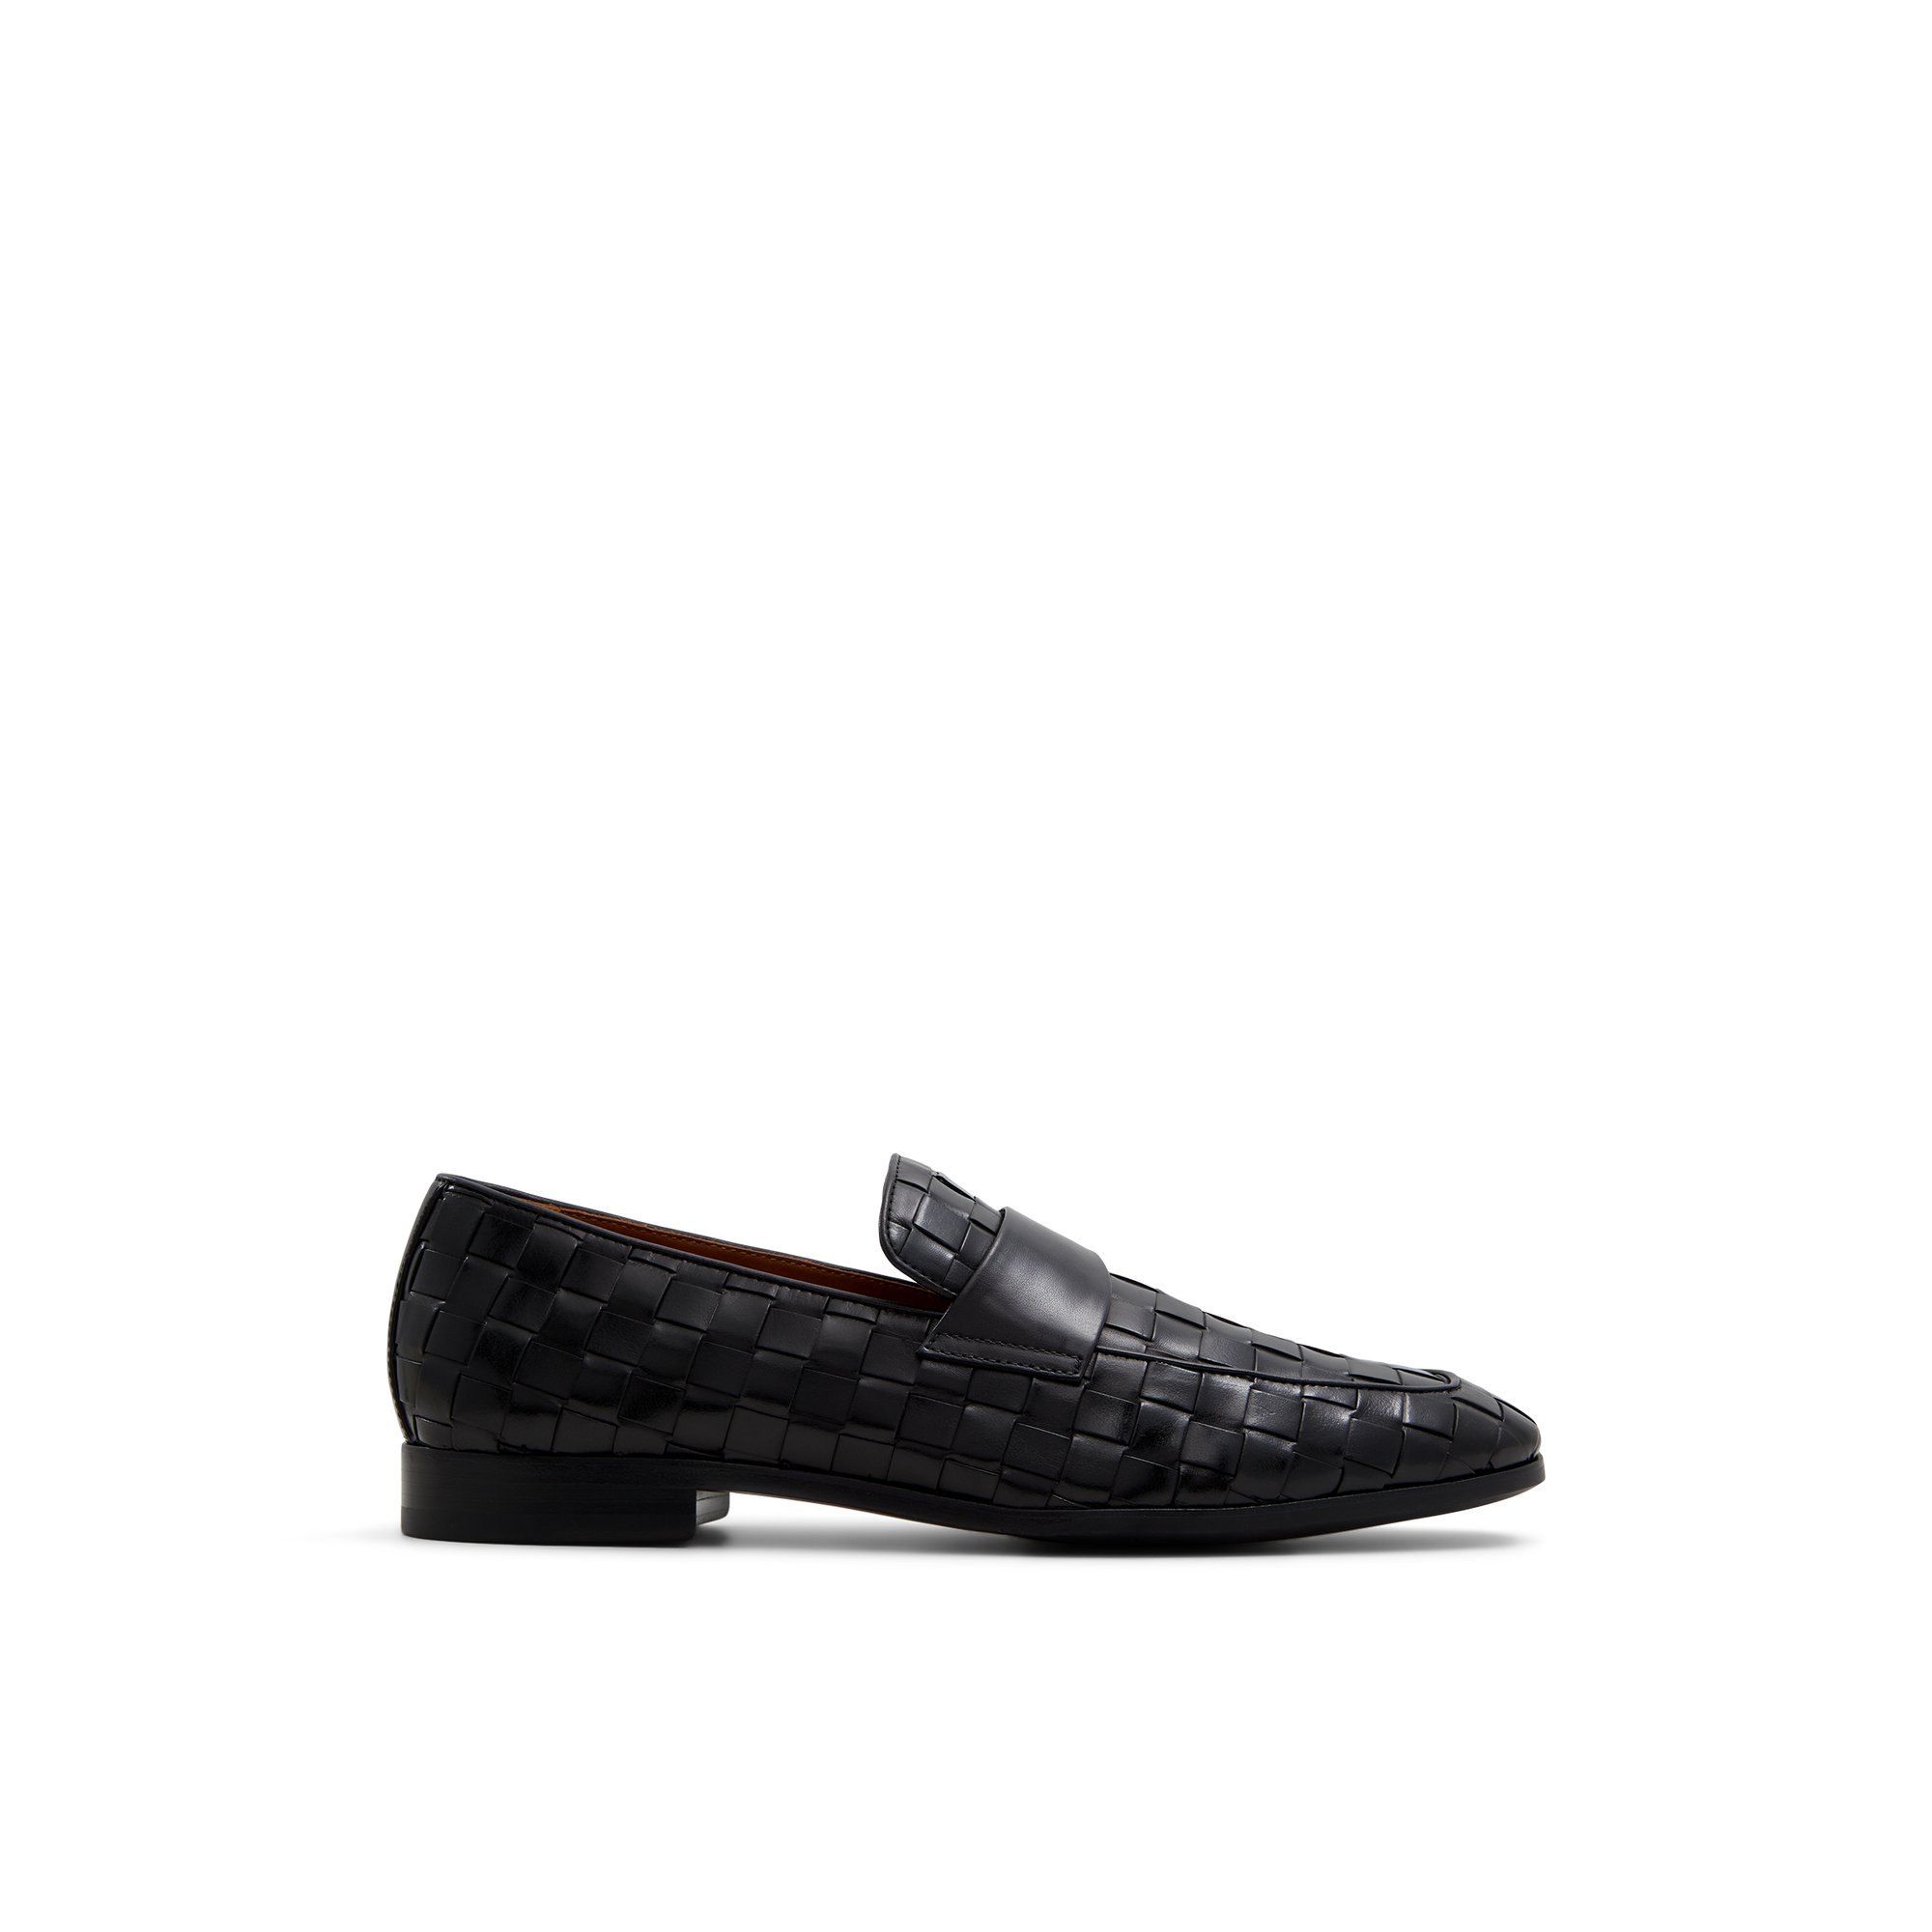 ALDO Wallace - Men's Dress Shoe - Black